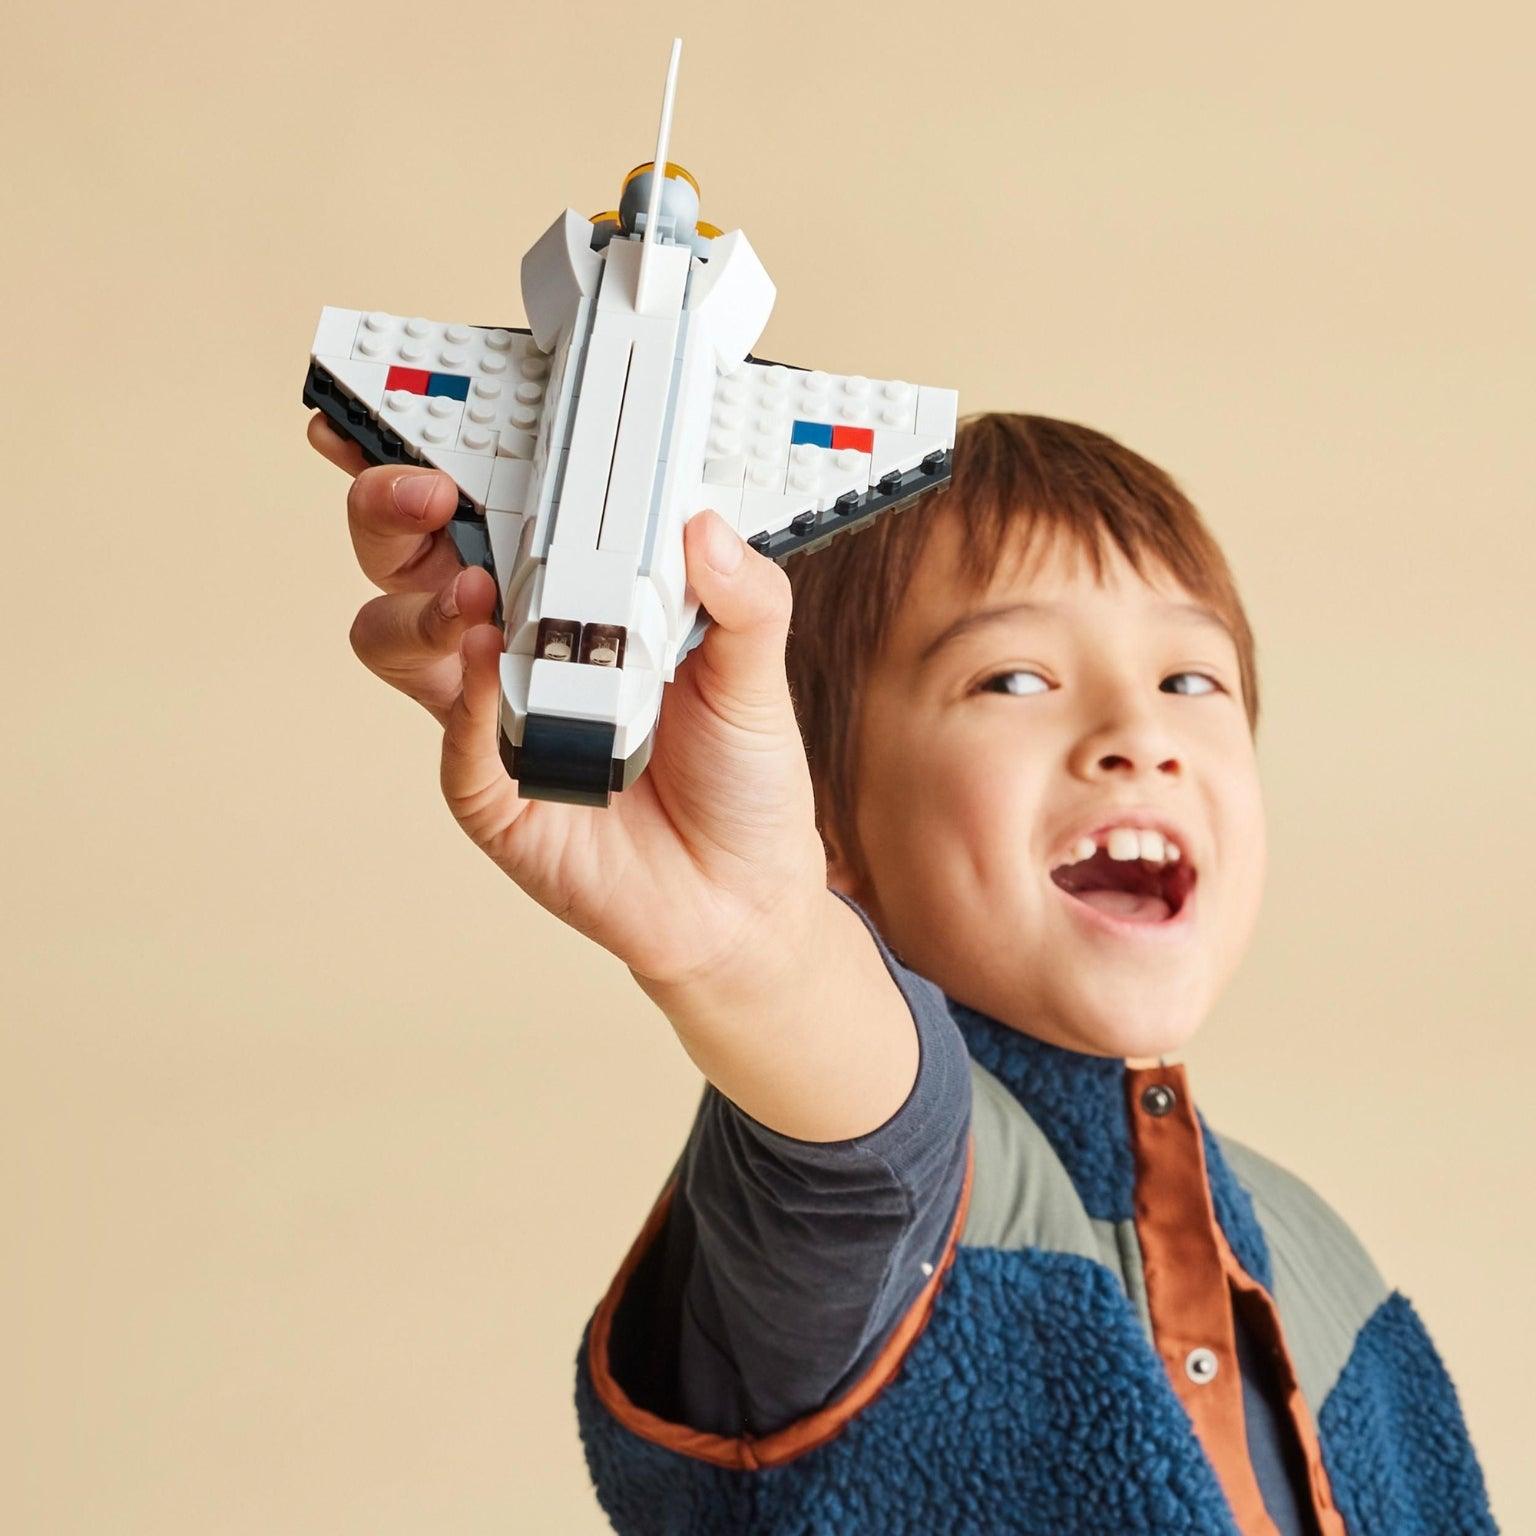 Lego Creator Vaivém Espacial - Brincatoys